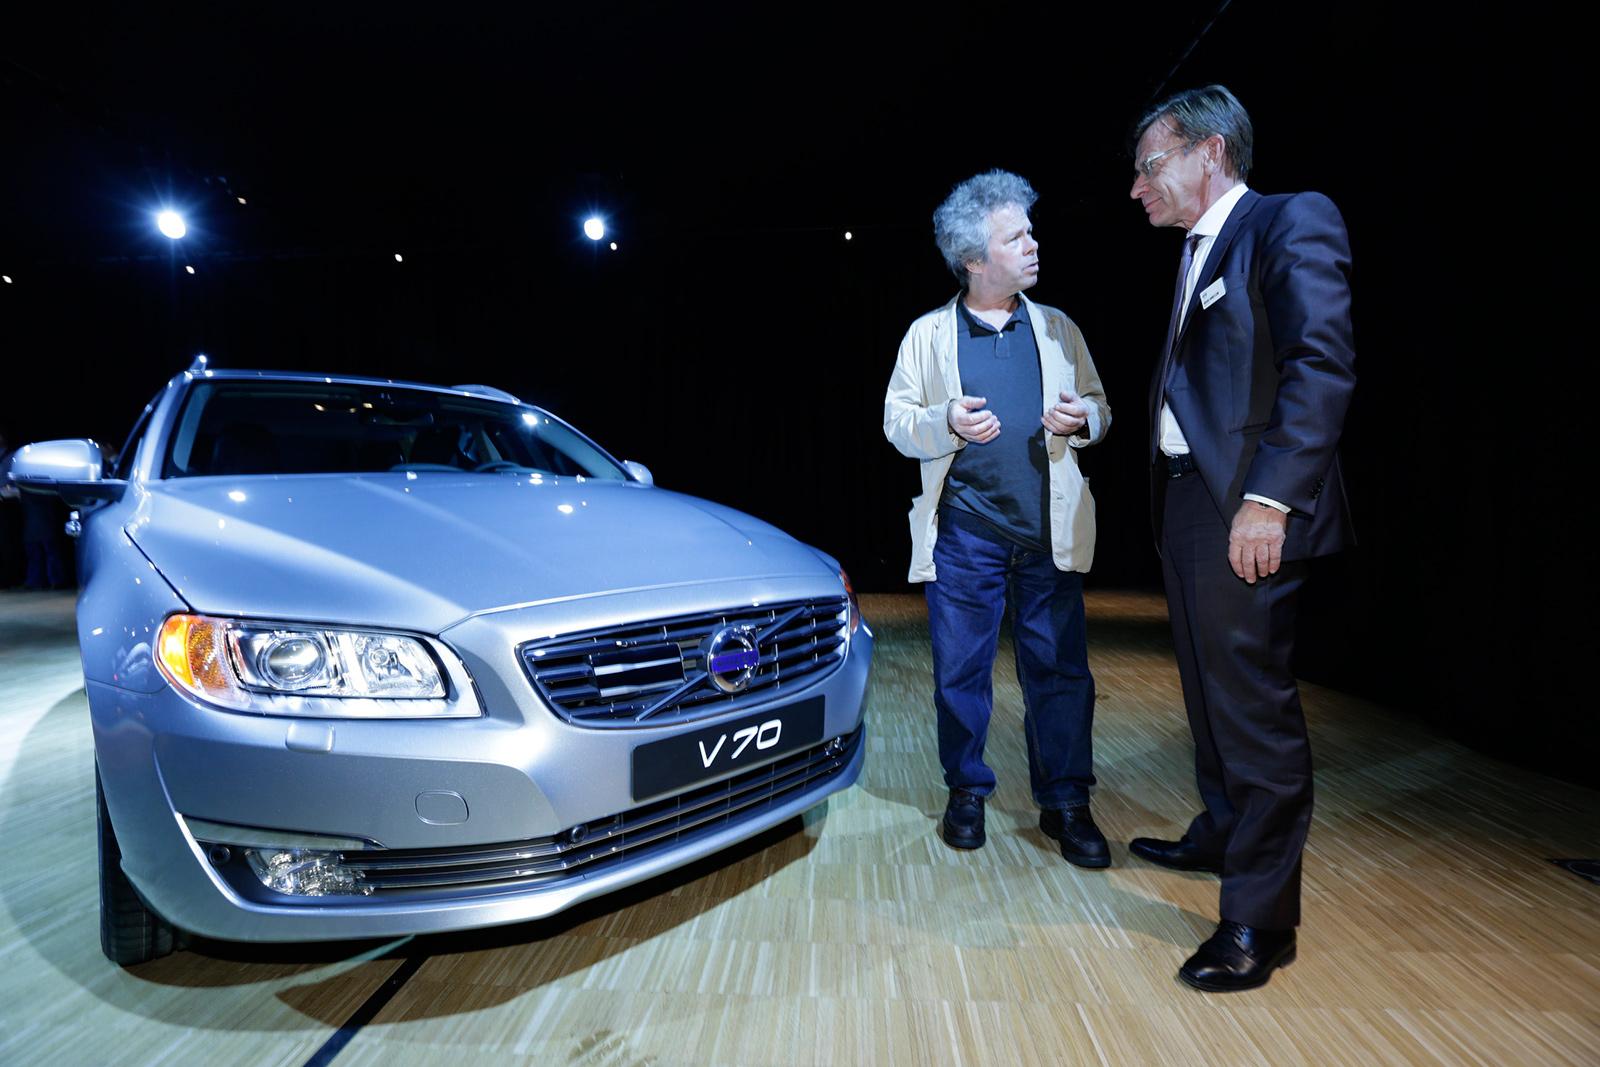 Robert Collin diskuterar Volvos framtid med nyblivne vd:n, Håkan Samuelsson. Foto: ANDERS DEROS